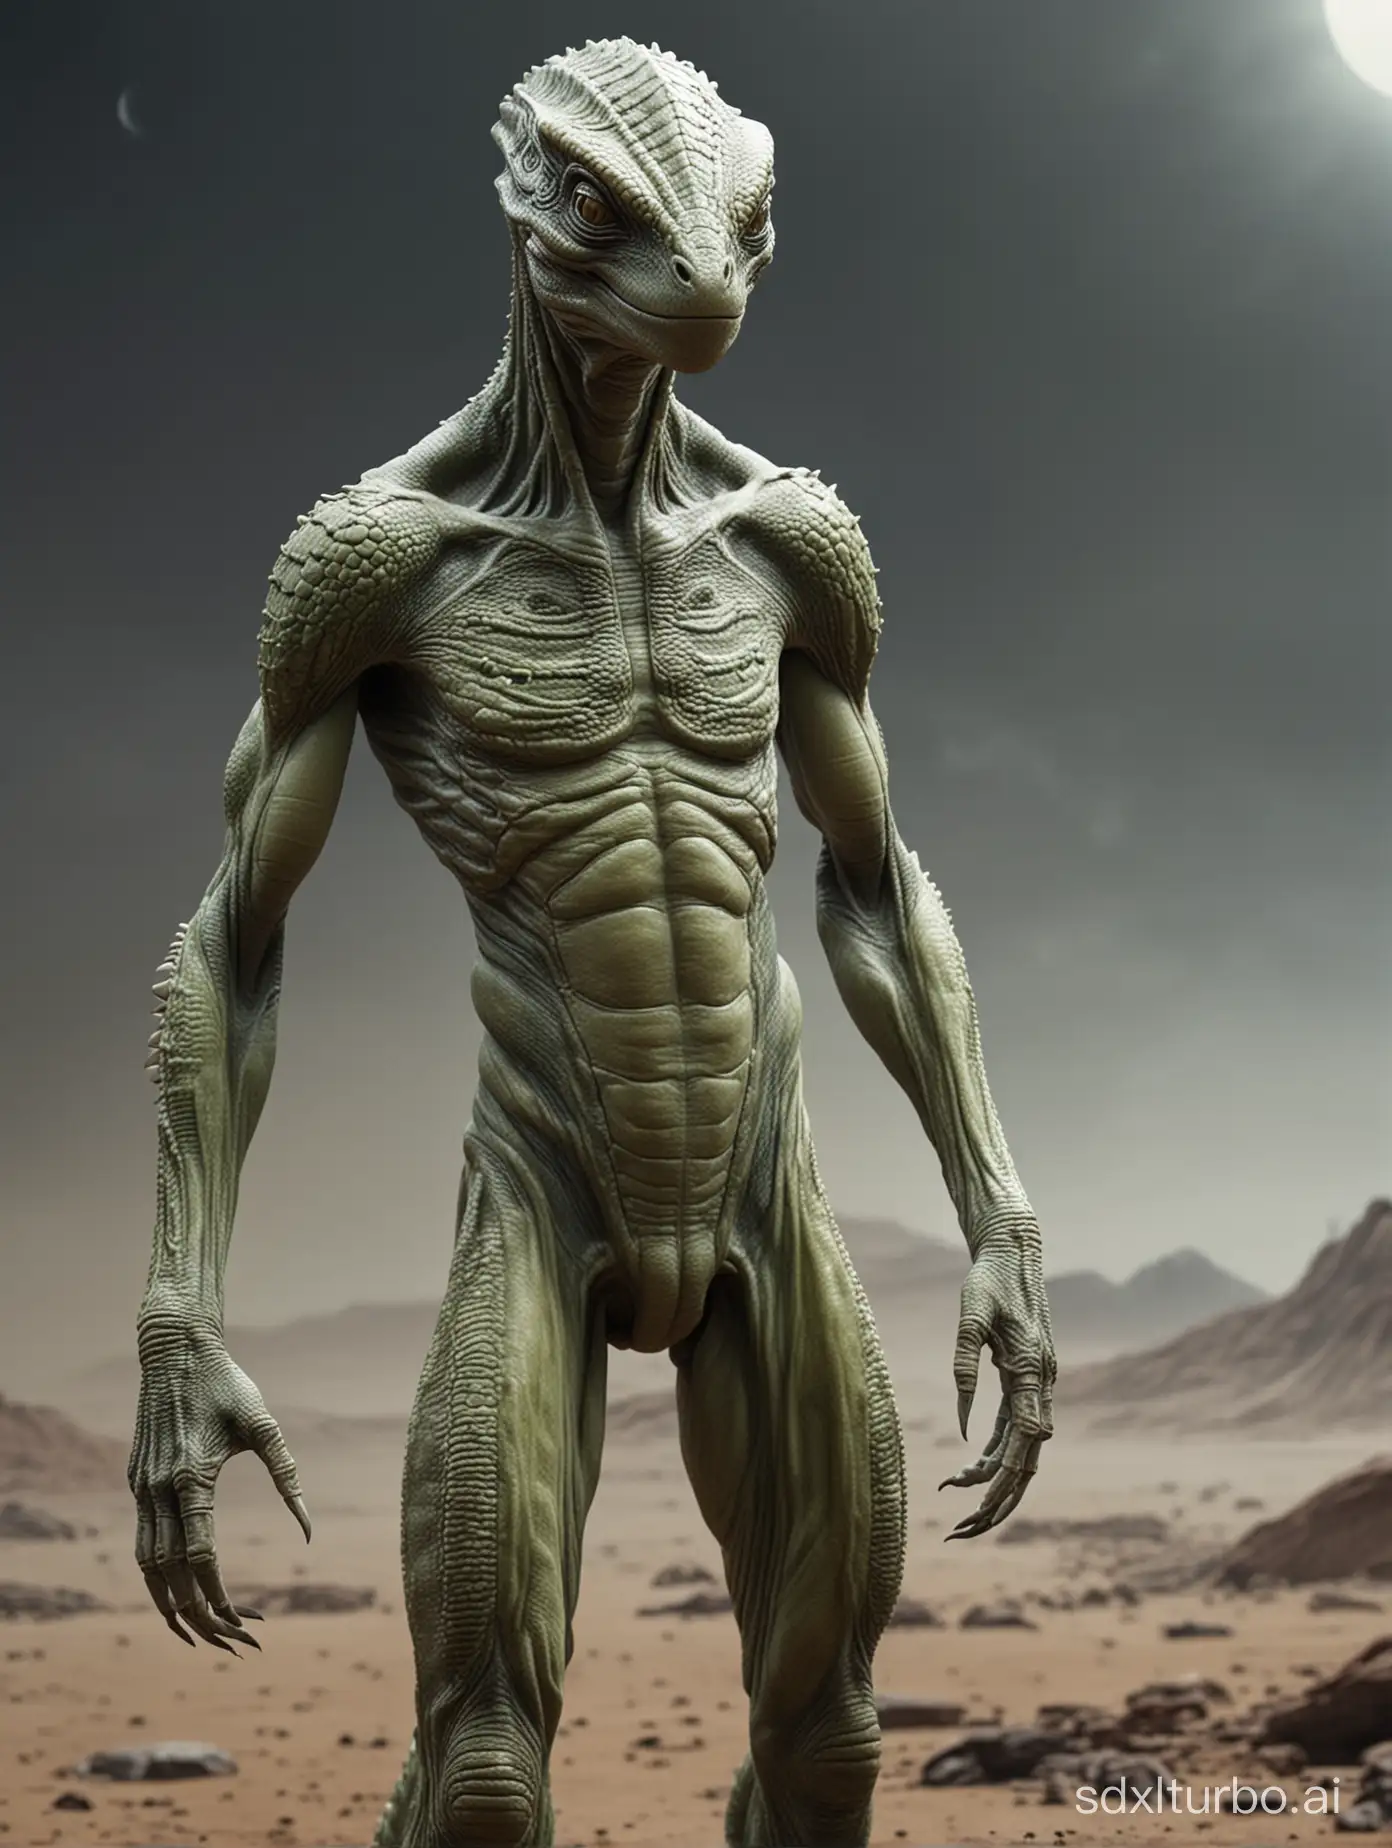 Reptilian-Alien-Standing-on-Alien-Terrain